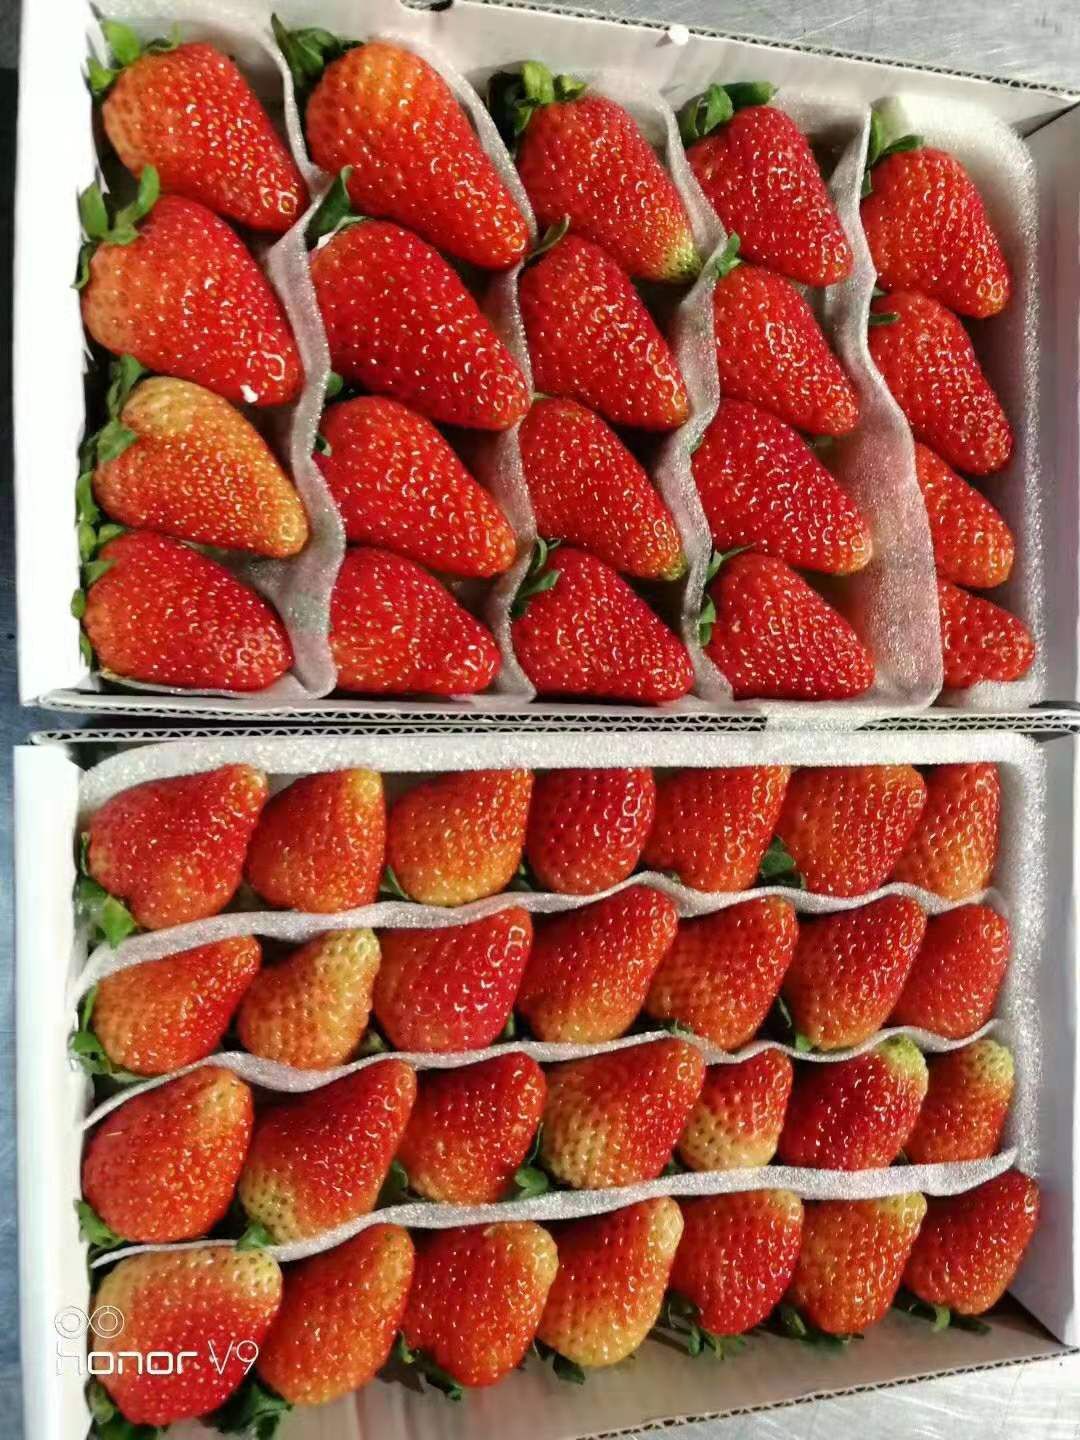 会泽县蒙特瑞草莓种植户直接现摘现发货源充足质量保证诚信第一